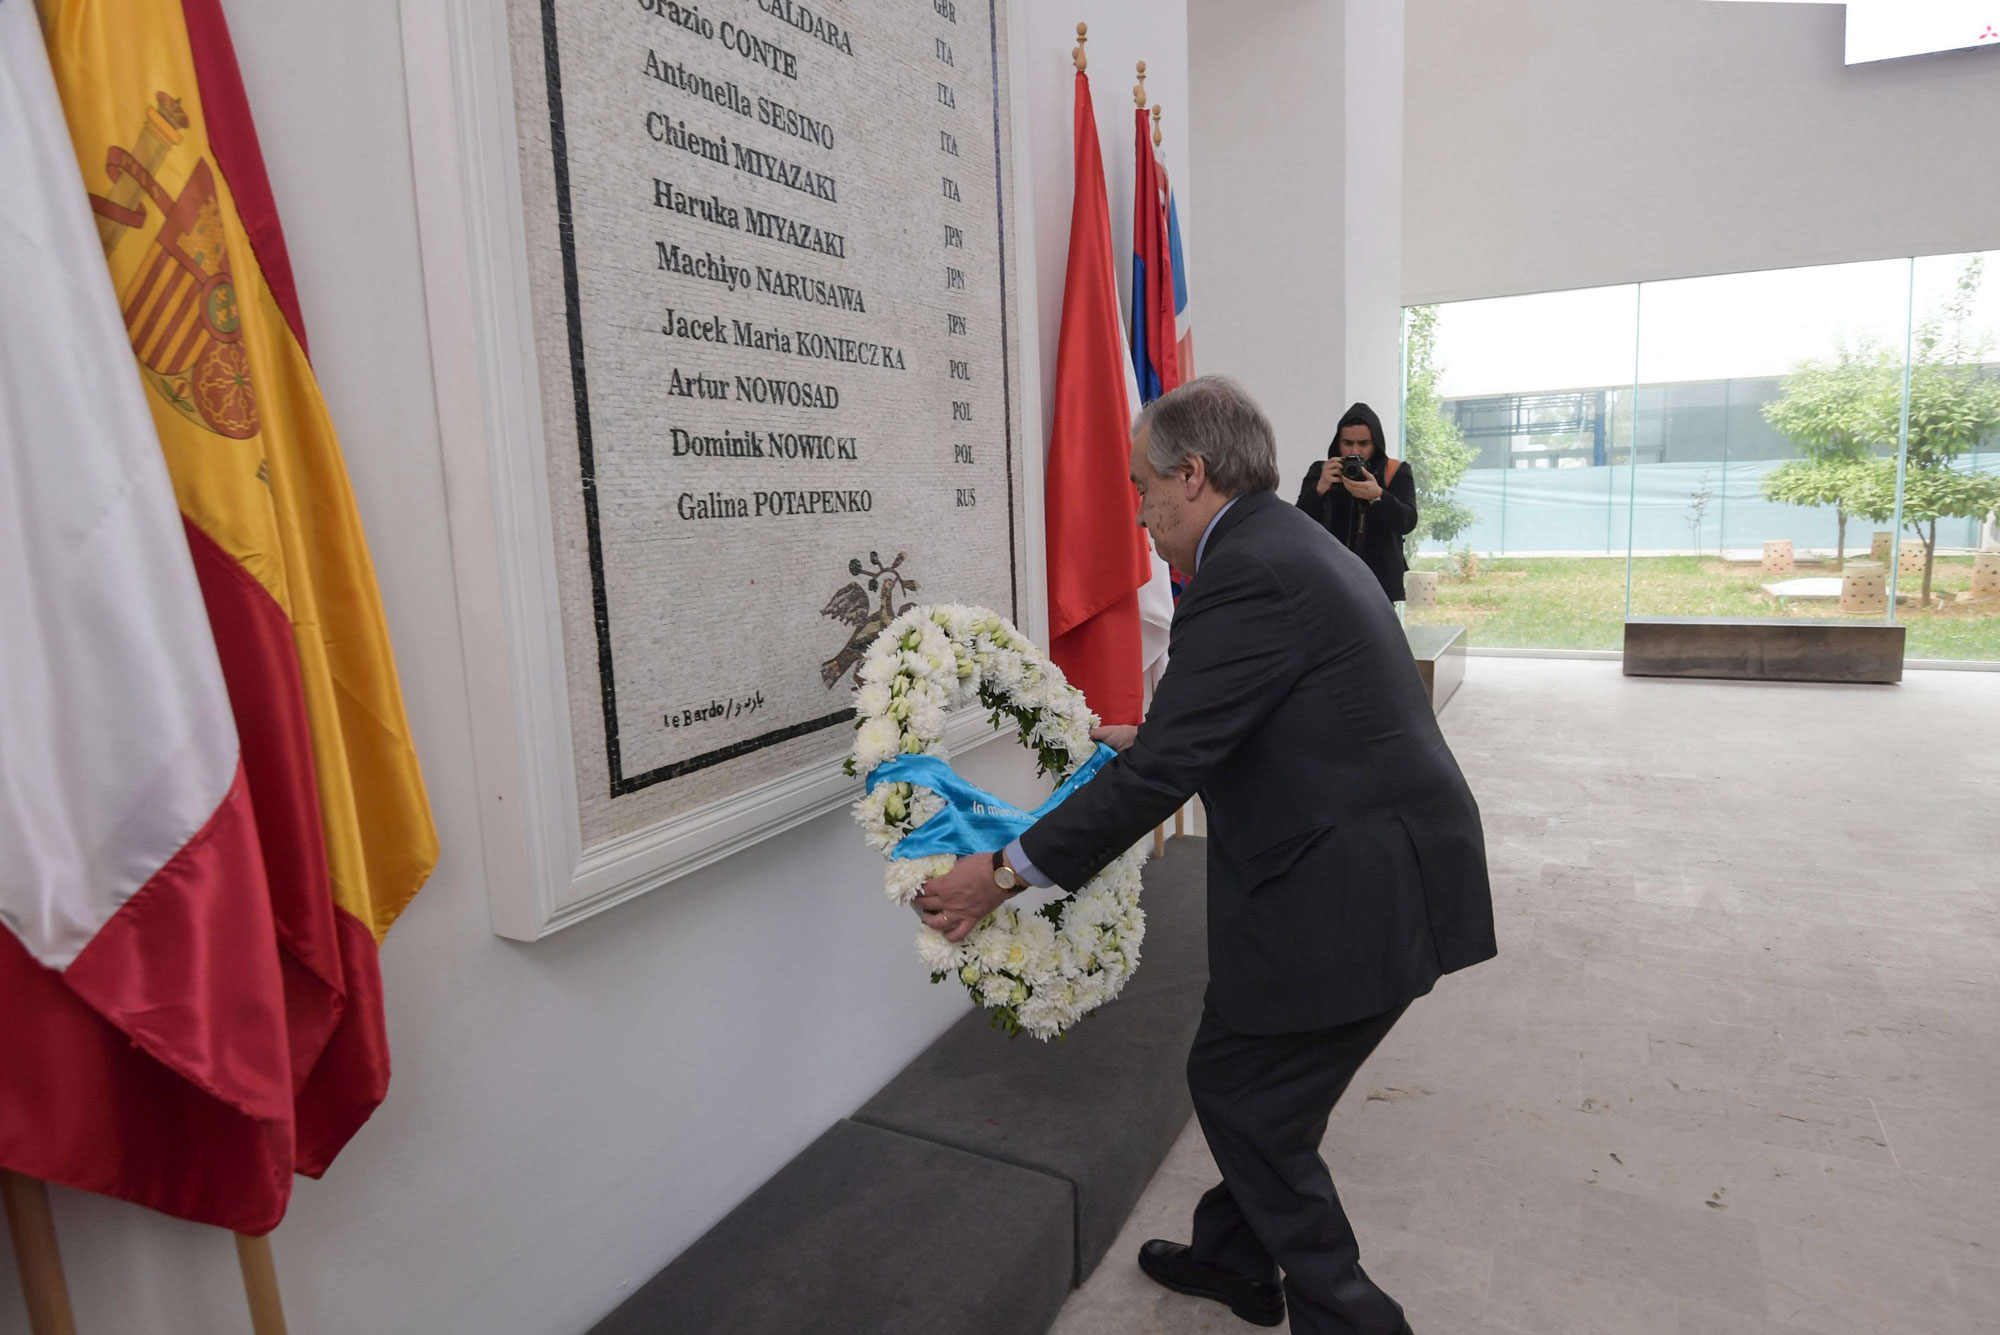 غوتيريش يضع اكليل زهور أمام النصب التذكاري لضحايا الهجوم الإرهابي على متحف باردو